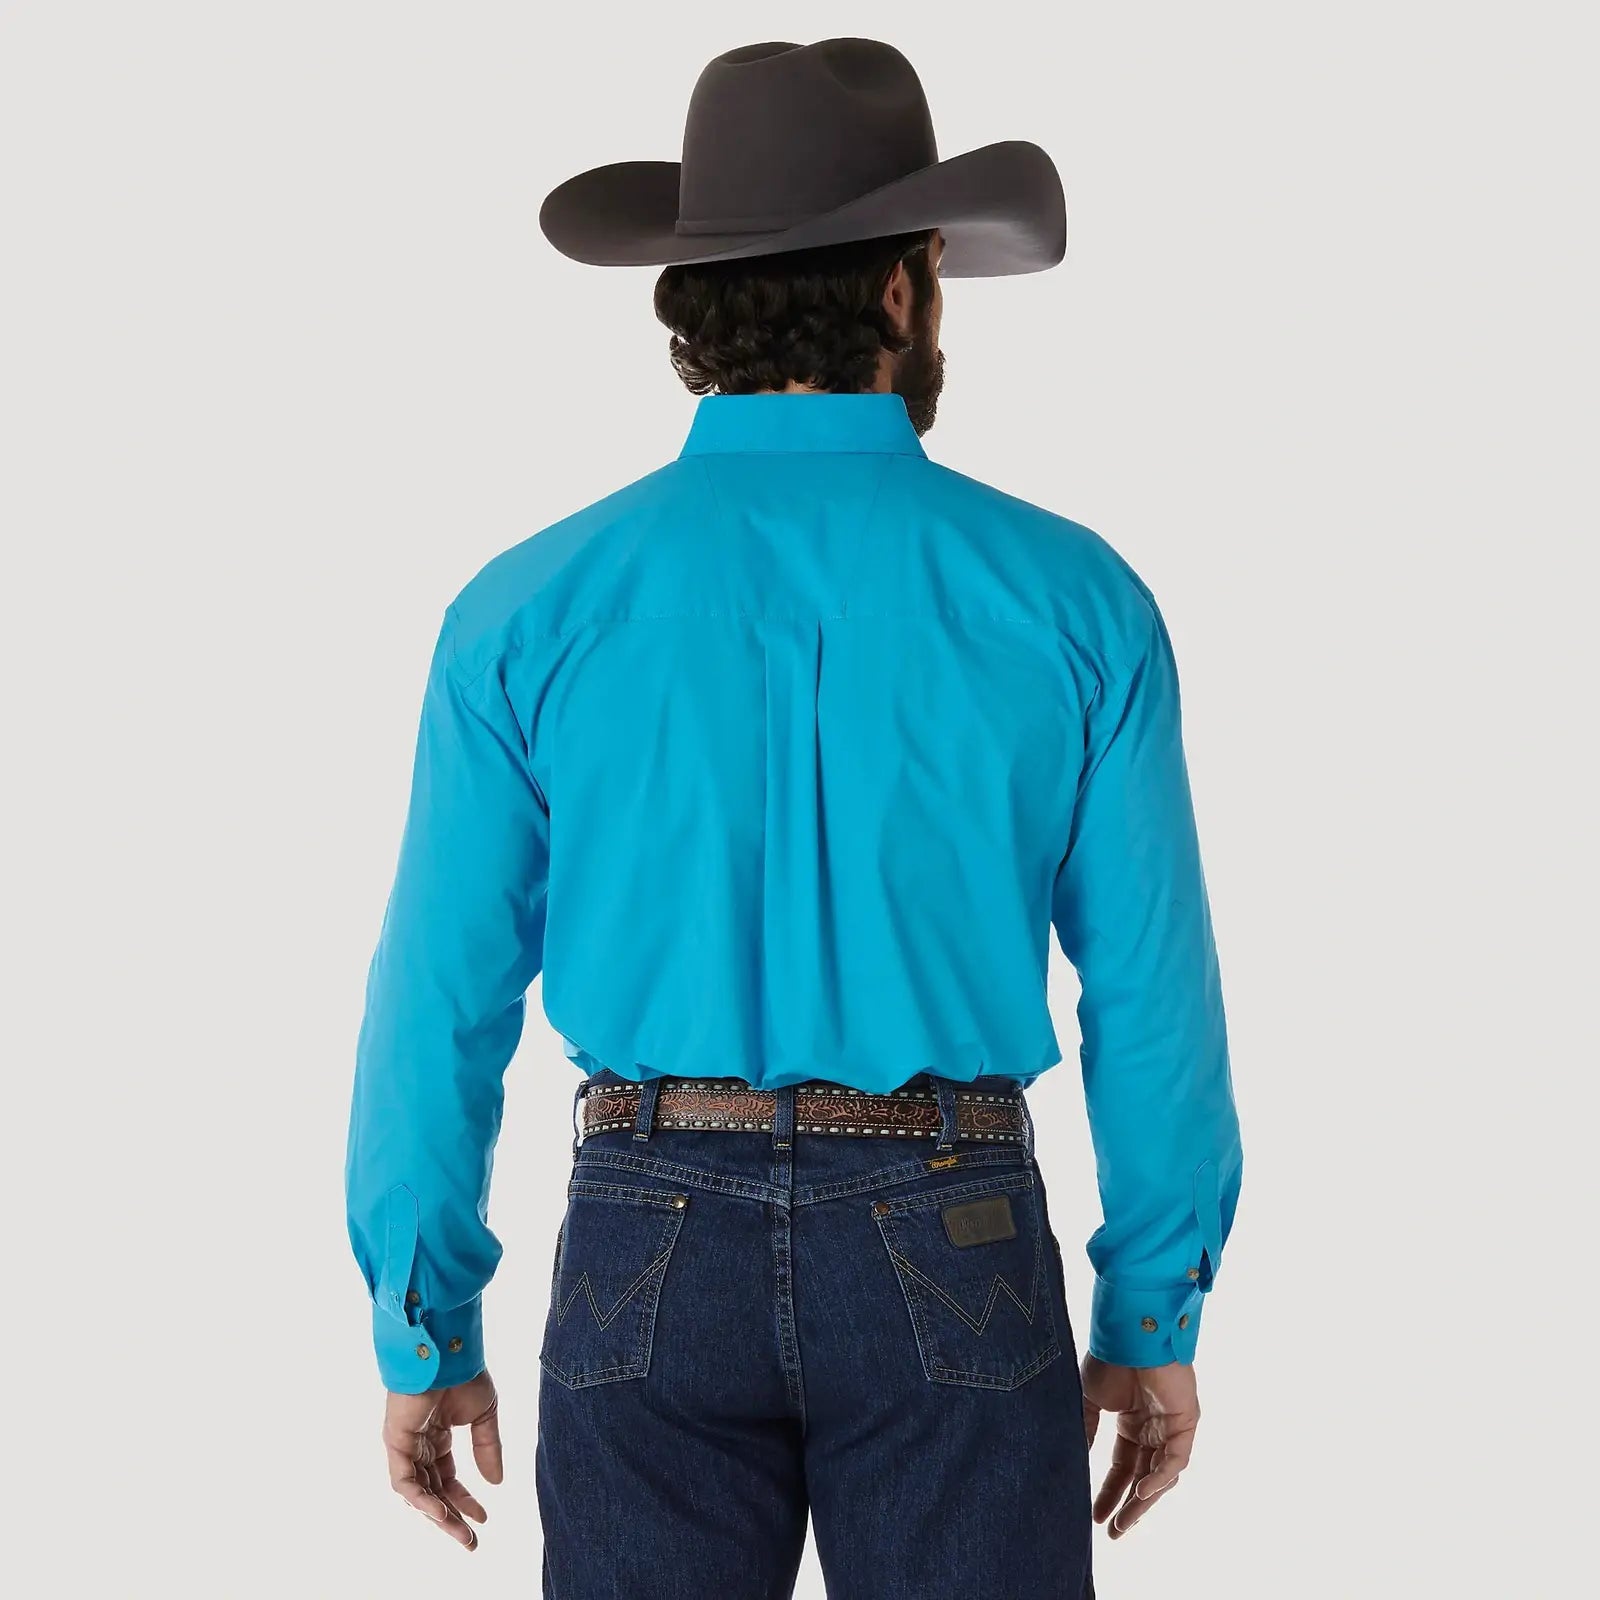 Wrangler Men’s Shirt George Strait Long Sleeve Button Down MGS272G - Wrangler